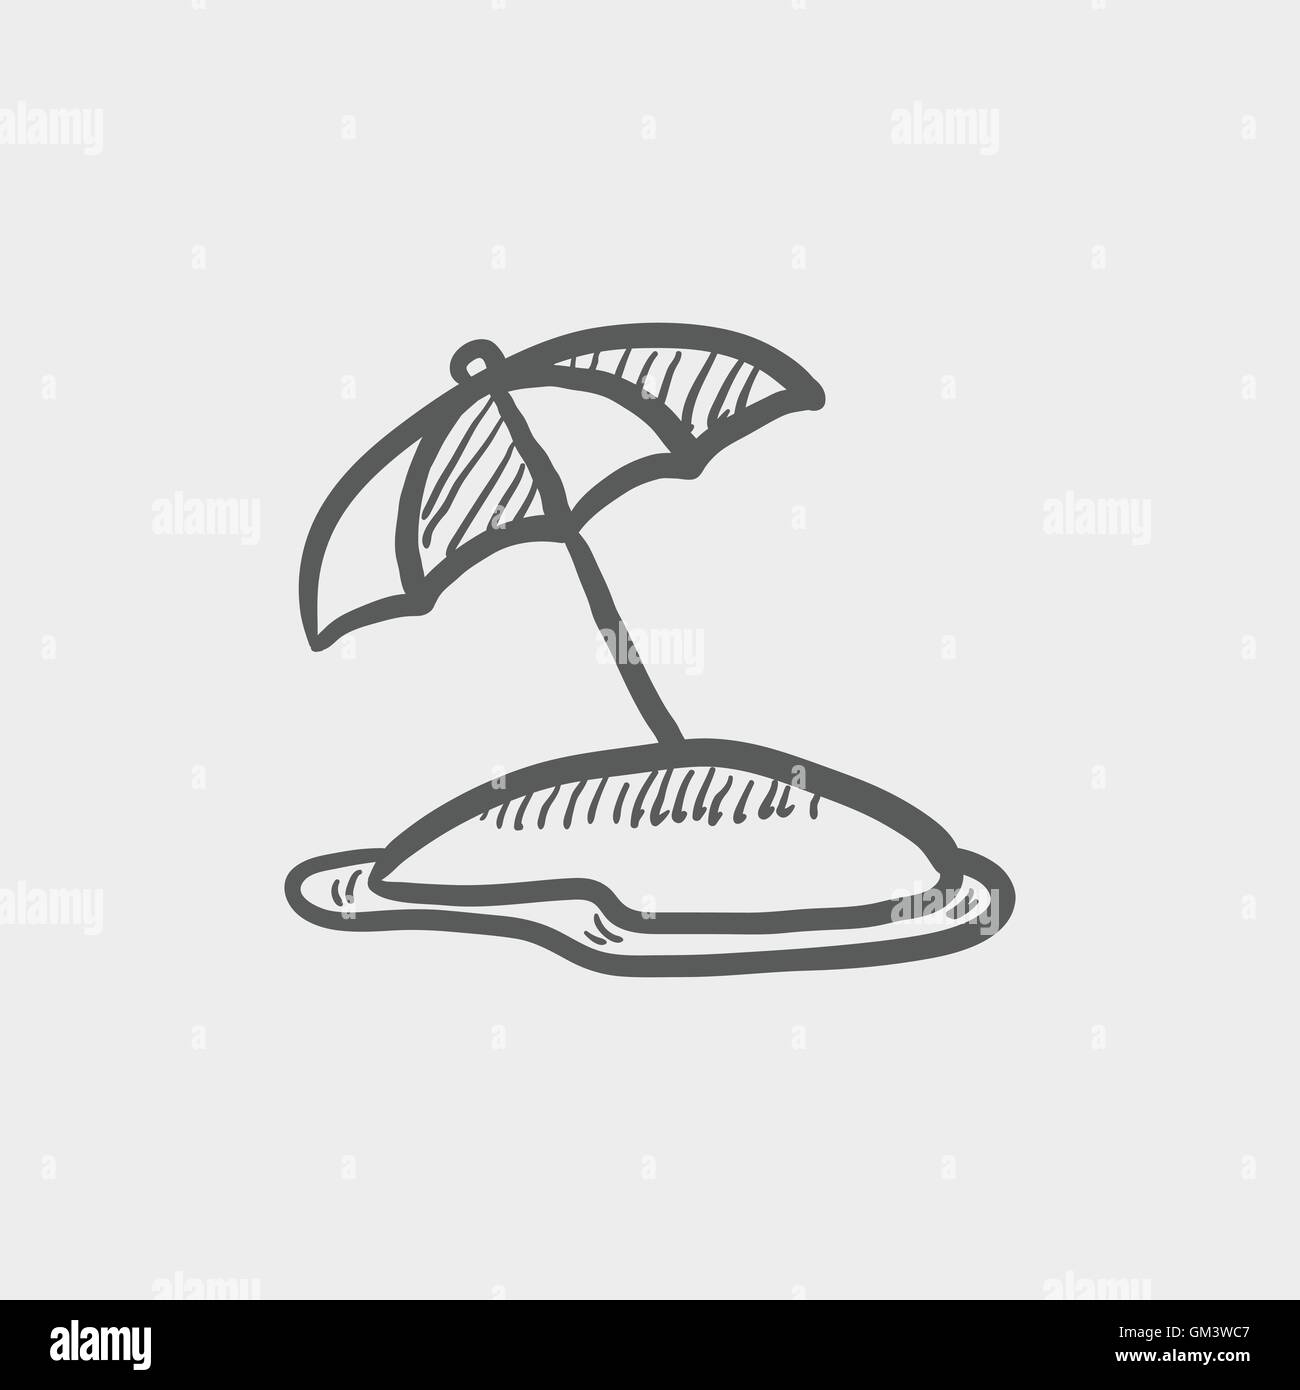 Beach umbrella sketch icon Stock Vector